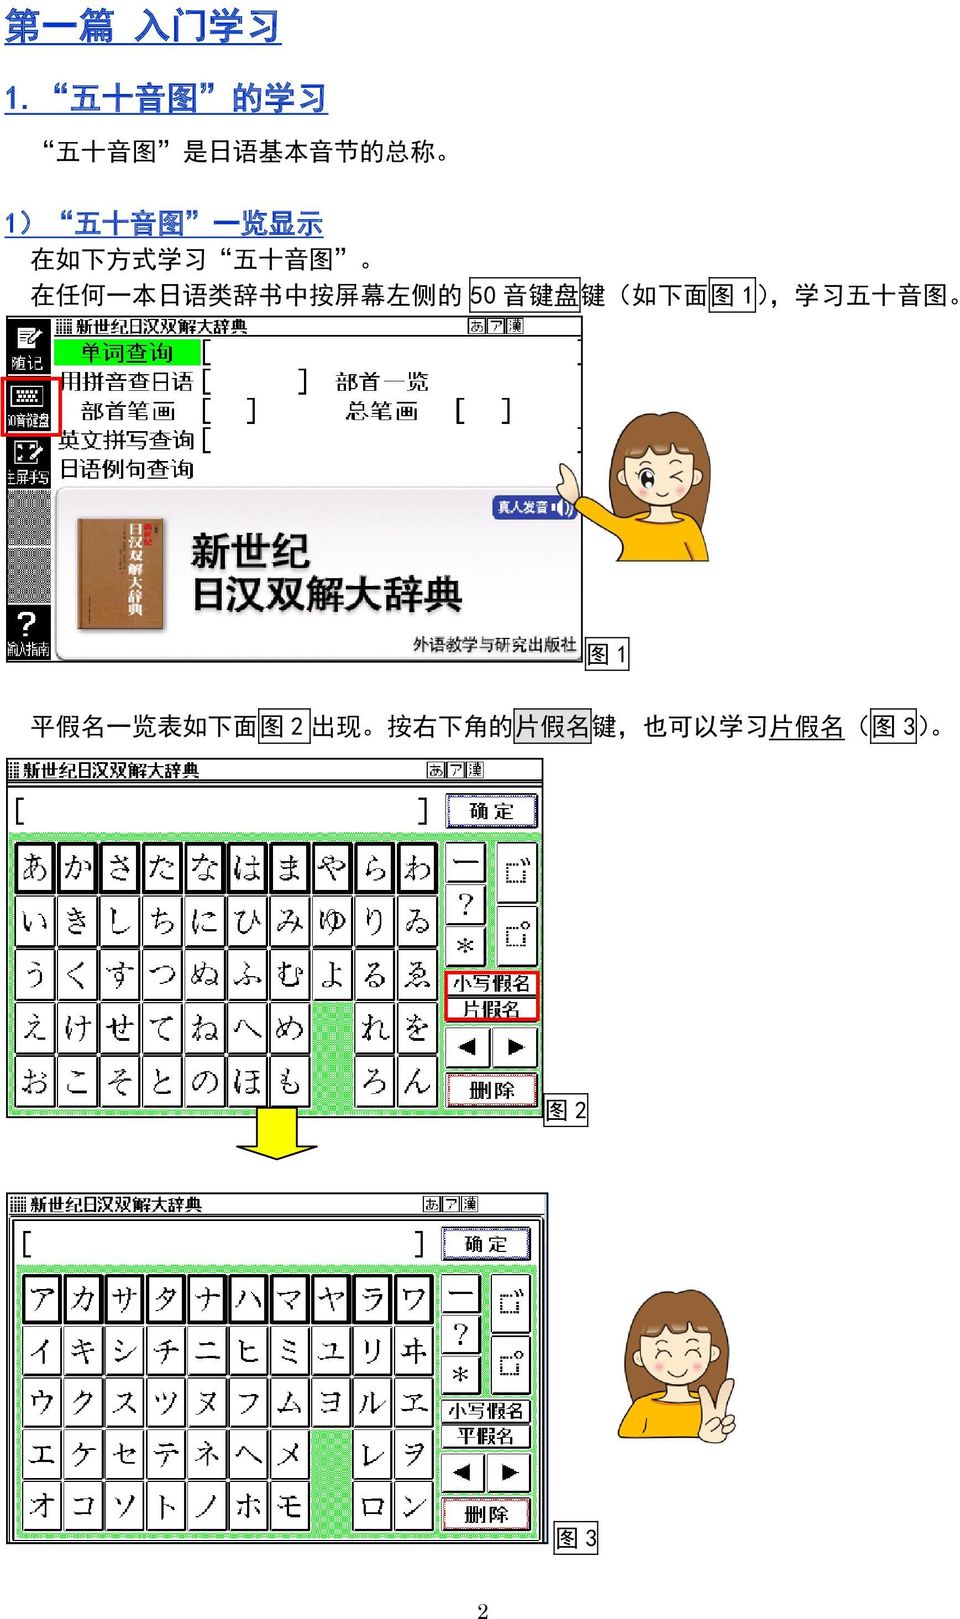 如 下 方 式 学 习 五 十 音 图 在 任 何 一 本 日 语 类 辞 书 中 按 屏 幕 左 侧 的 50 音 键 盘